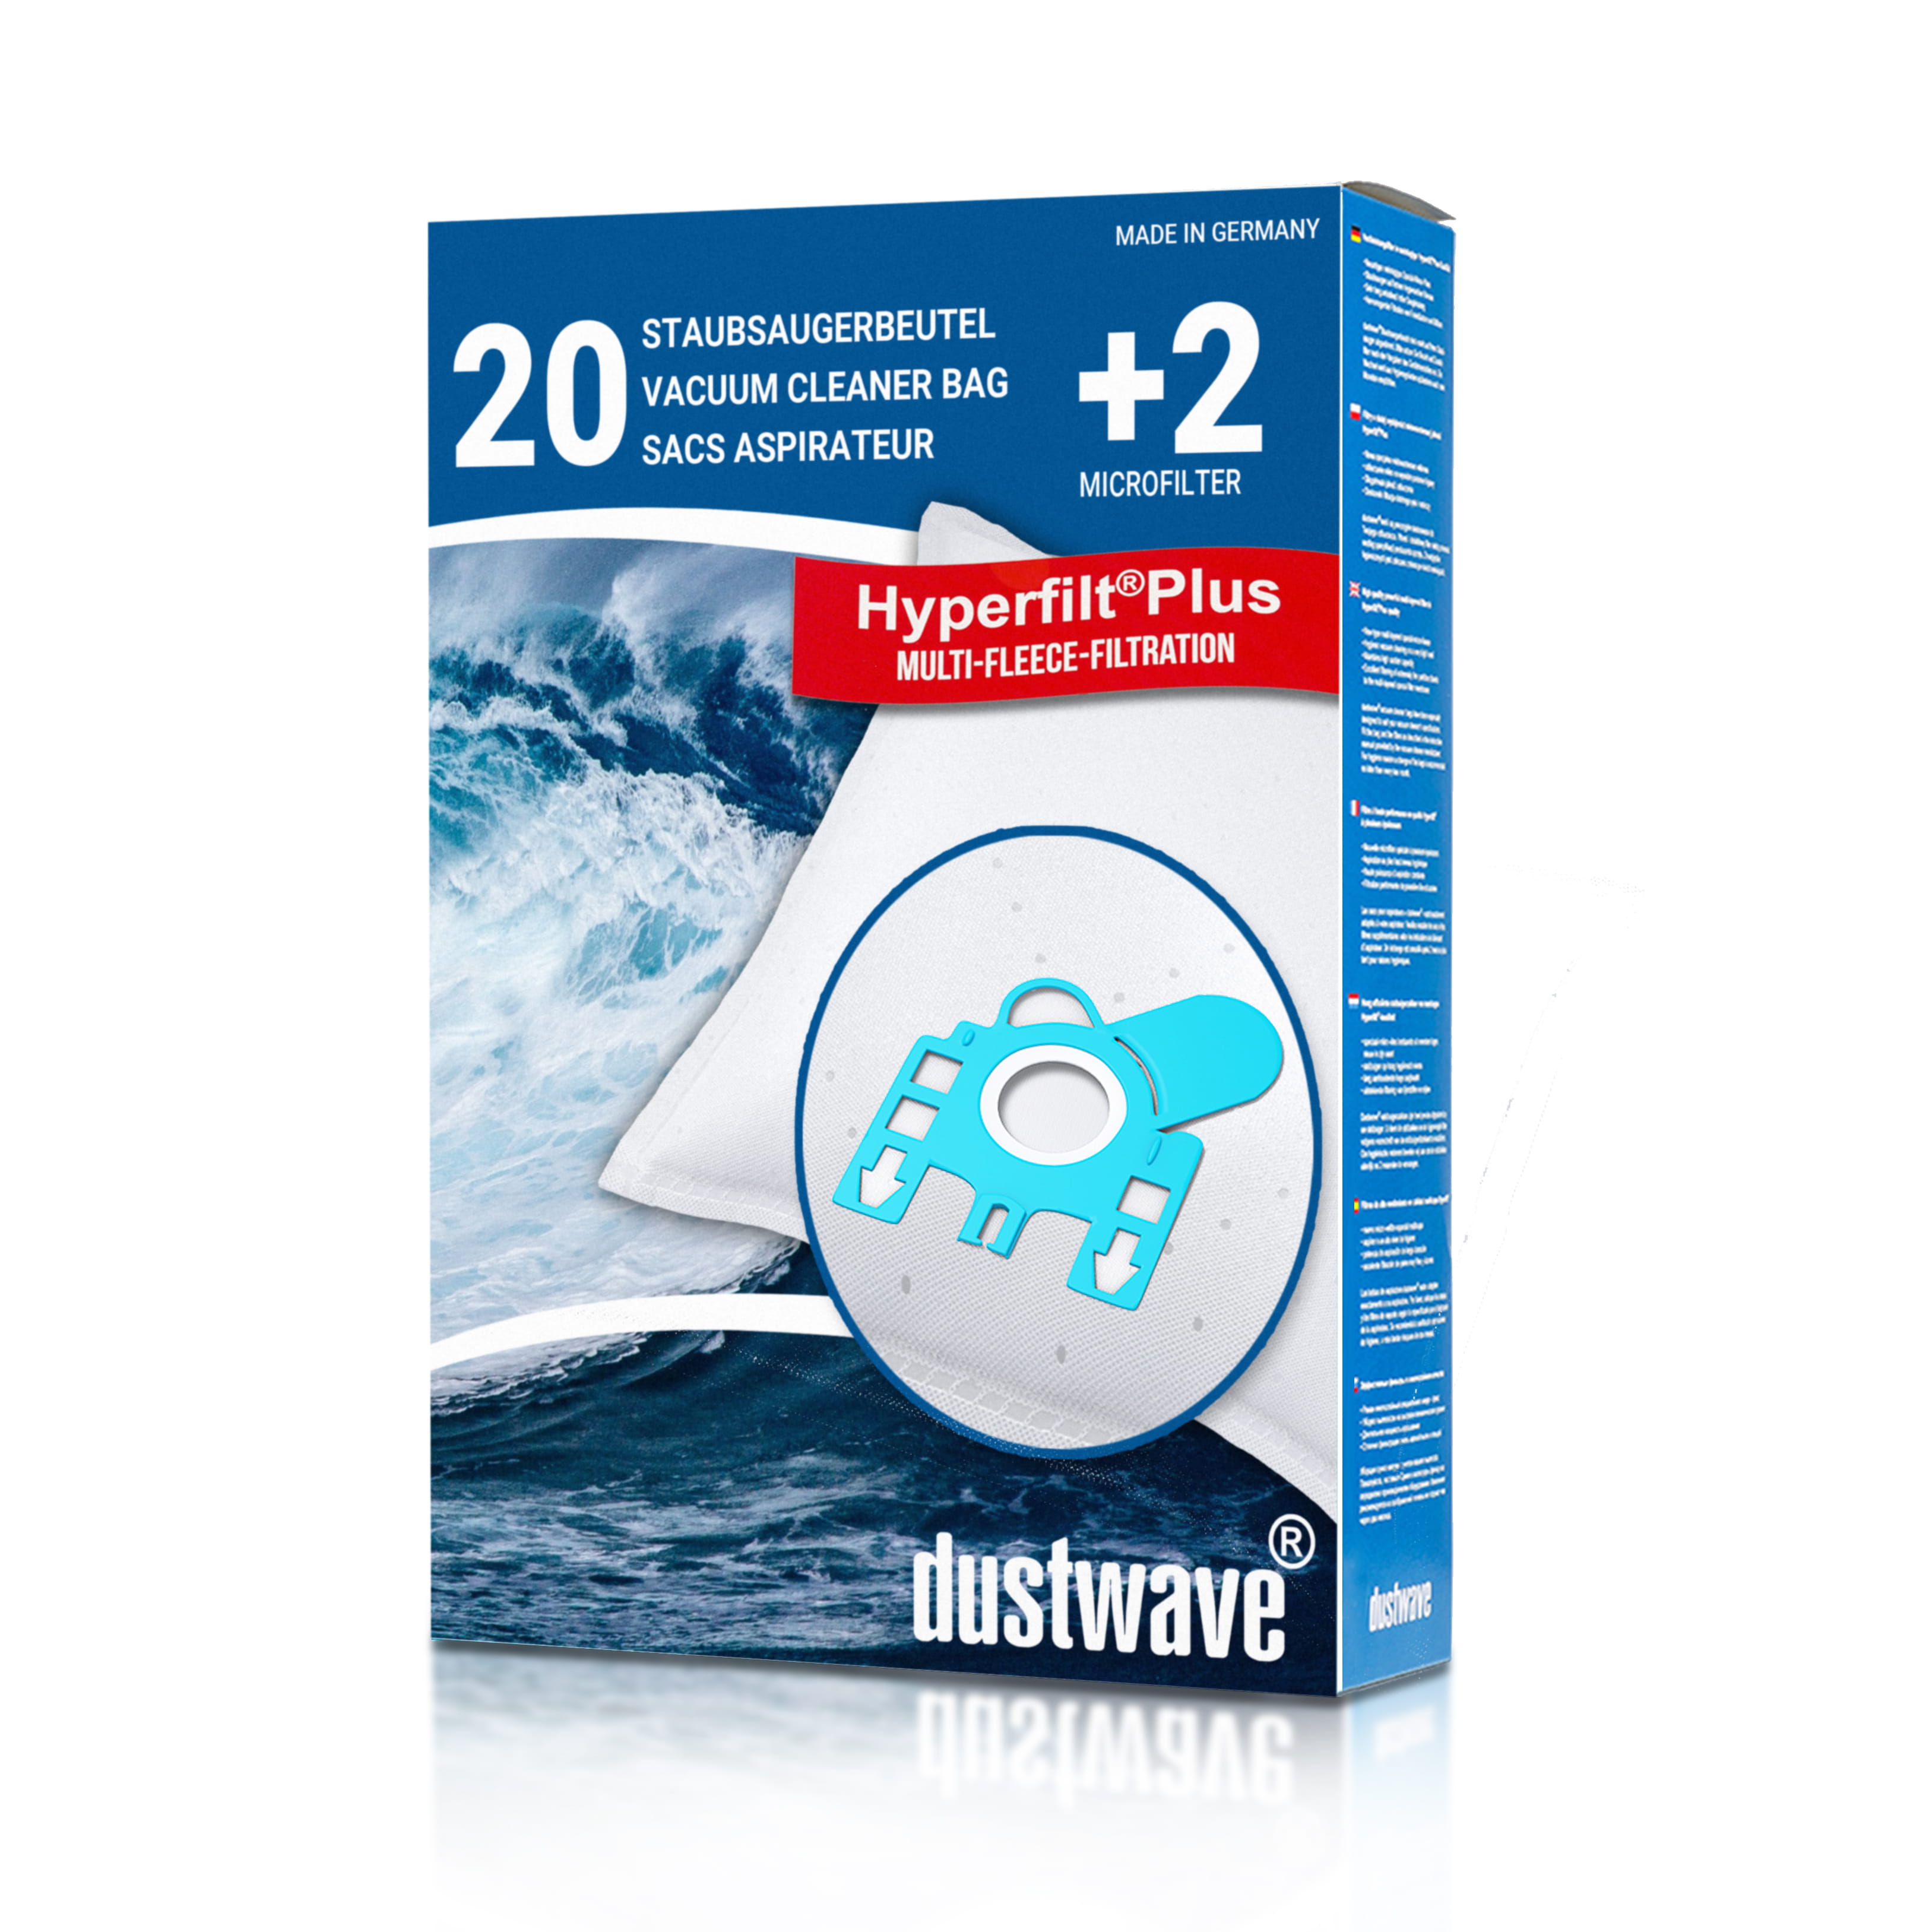 Dustwave® 20 Staubsaugerbeutel für Hoover T2001 / TRT2001 - hocheffizient, mehrlagiges Mikrovlies mit Hygieneverschluss - Made in Germany